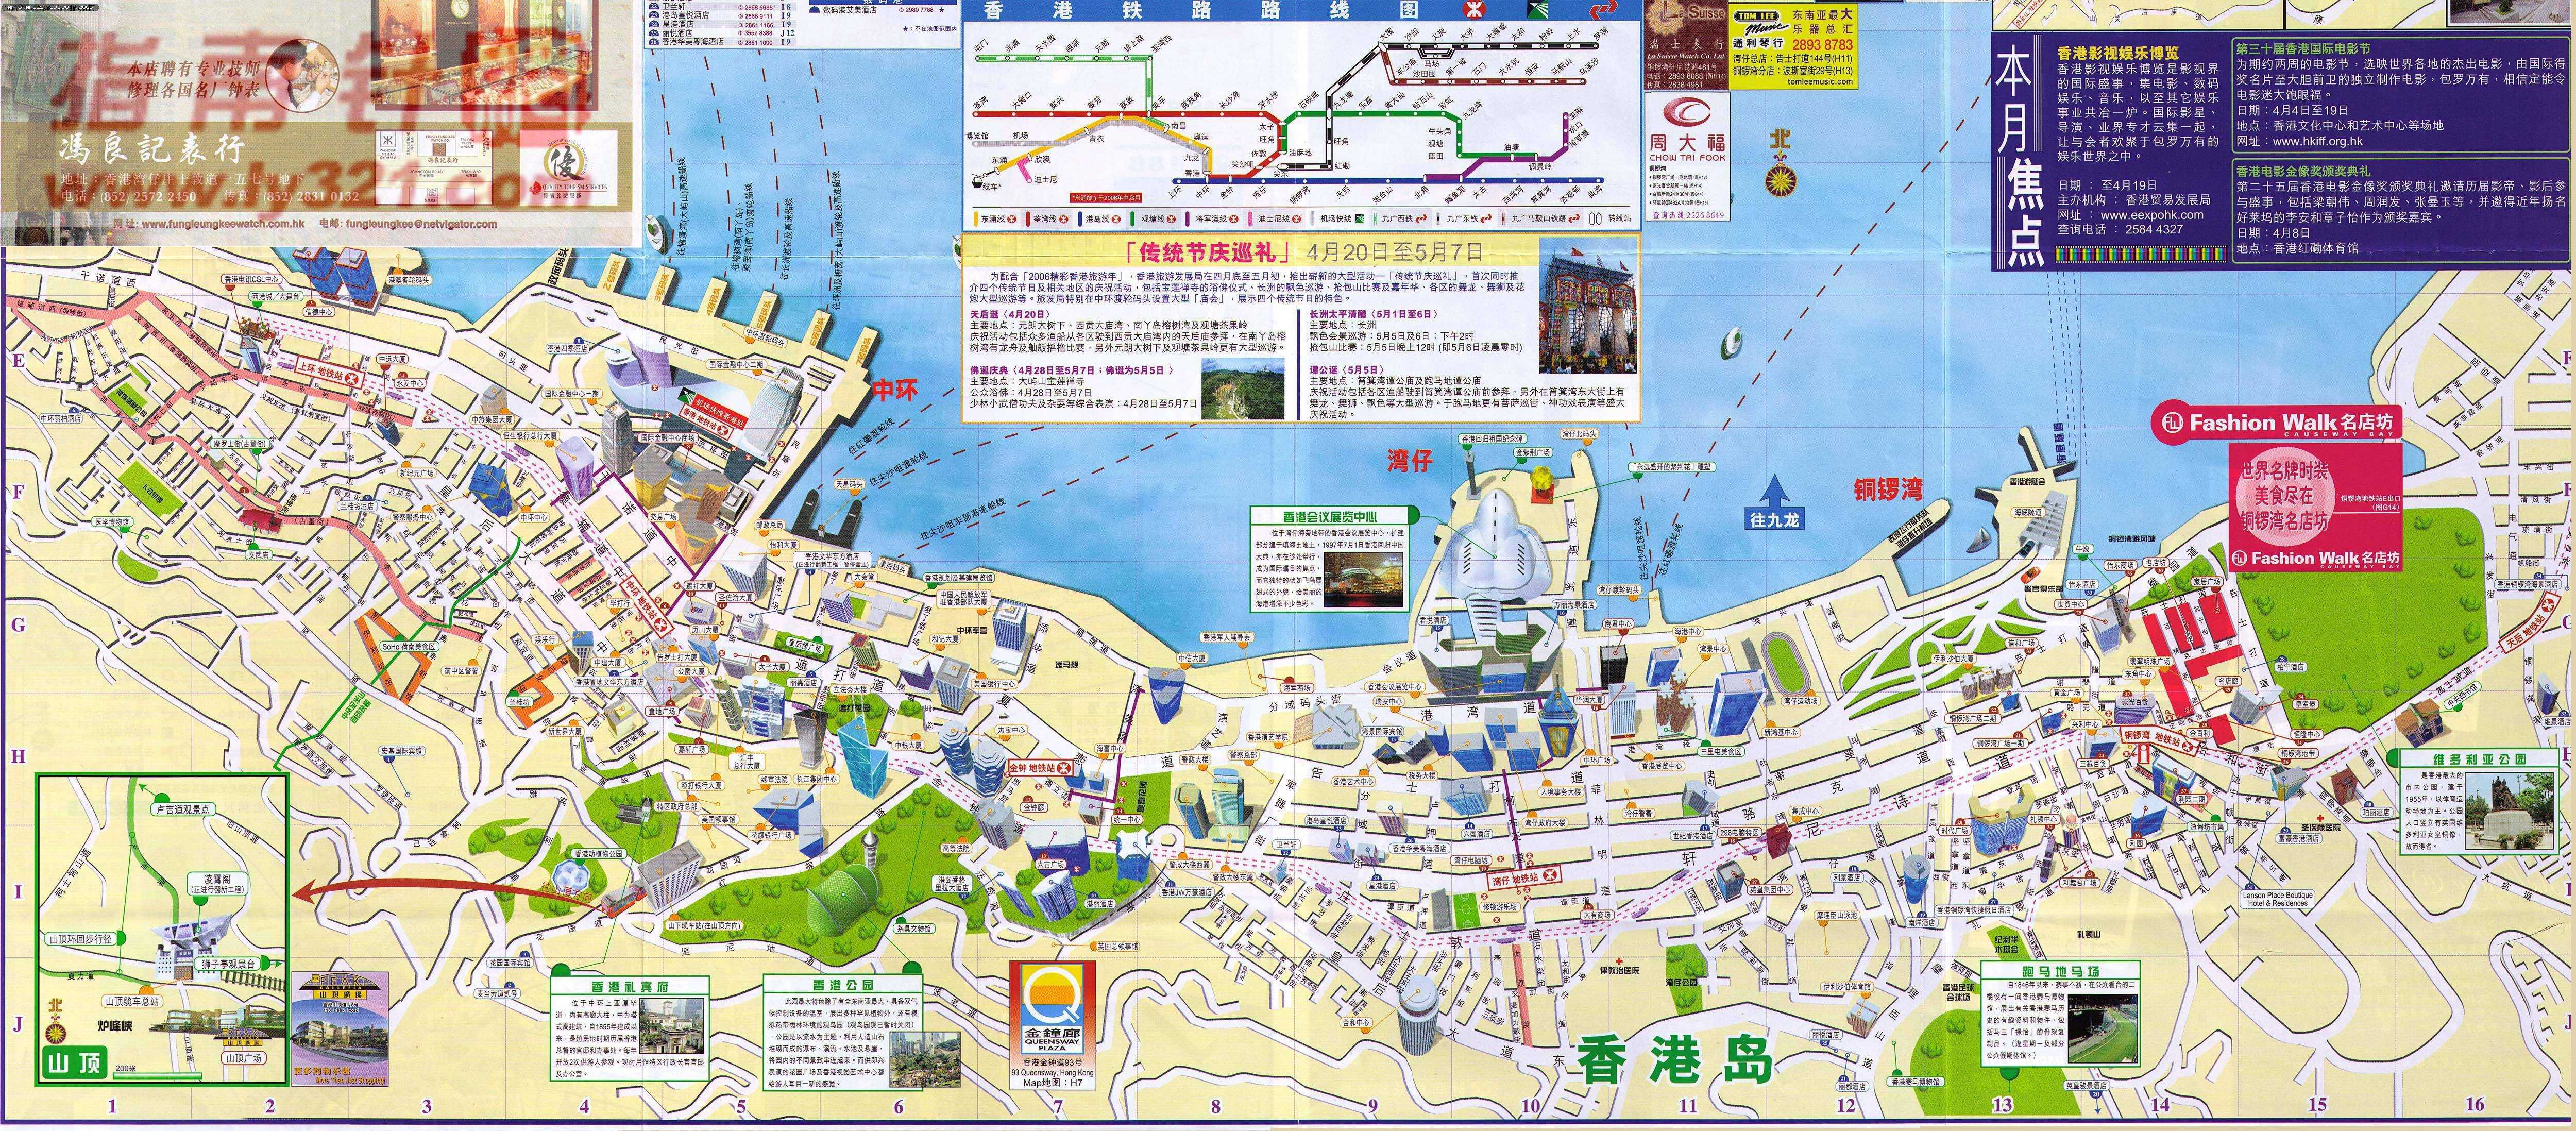 香港岛地图- 香港地图Hongkong Maps - 美景旅游网